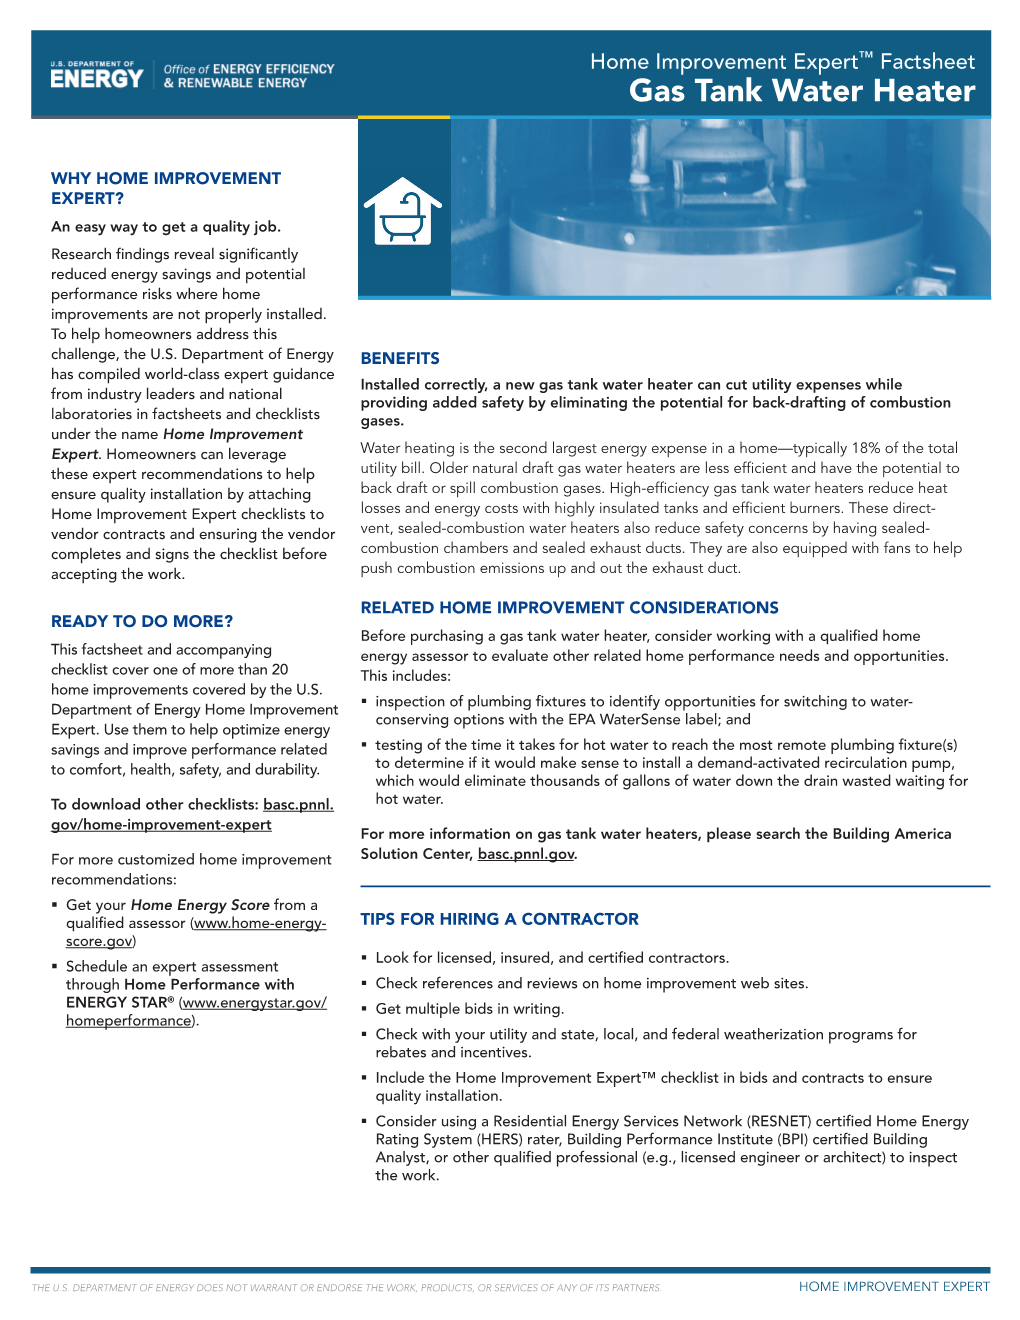 DOE Home Improvement Expert™ Fact Sheet and Checklist: Gas Tank